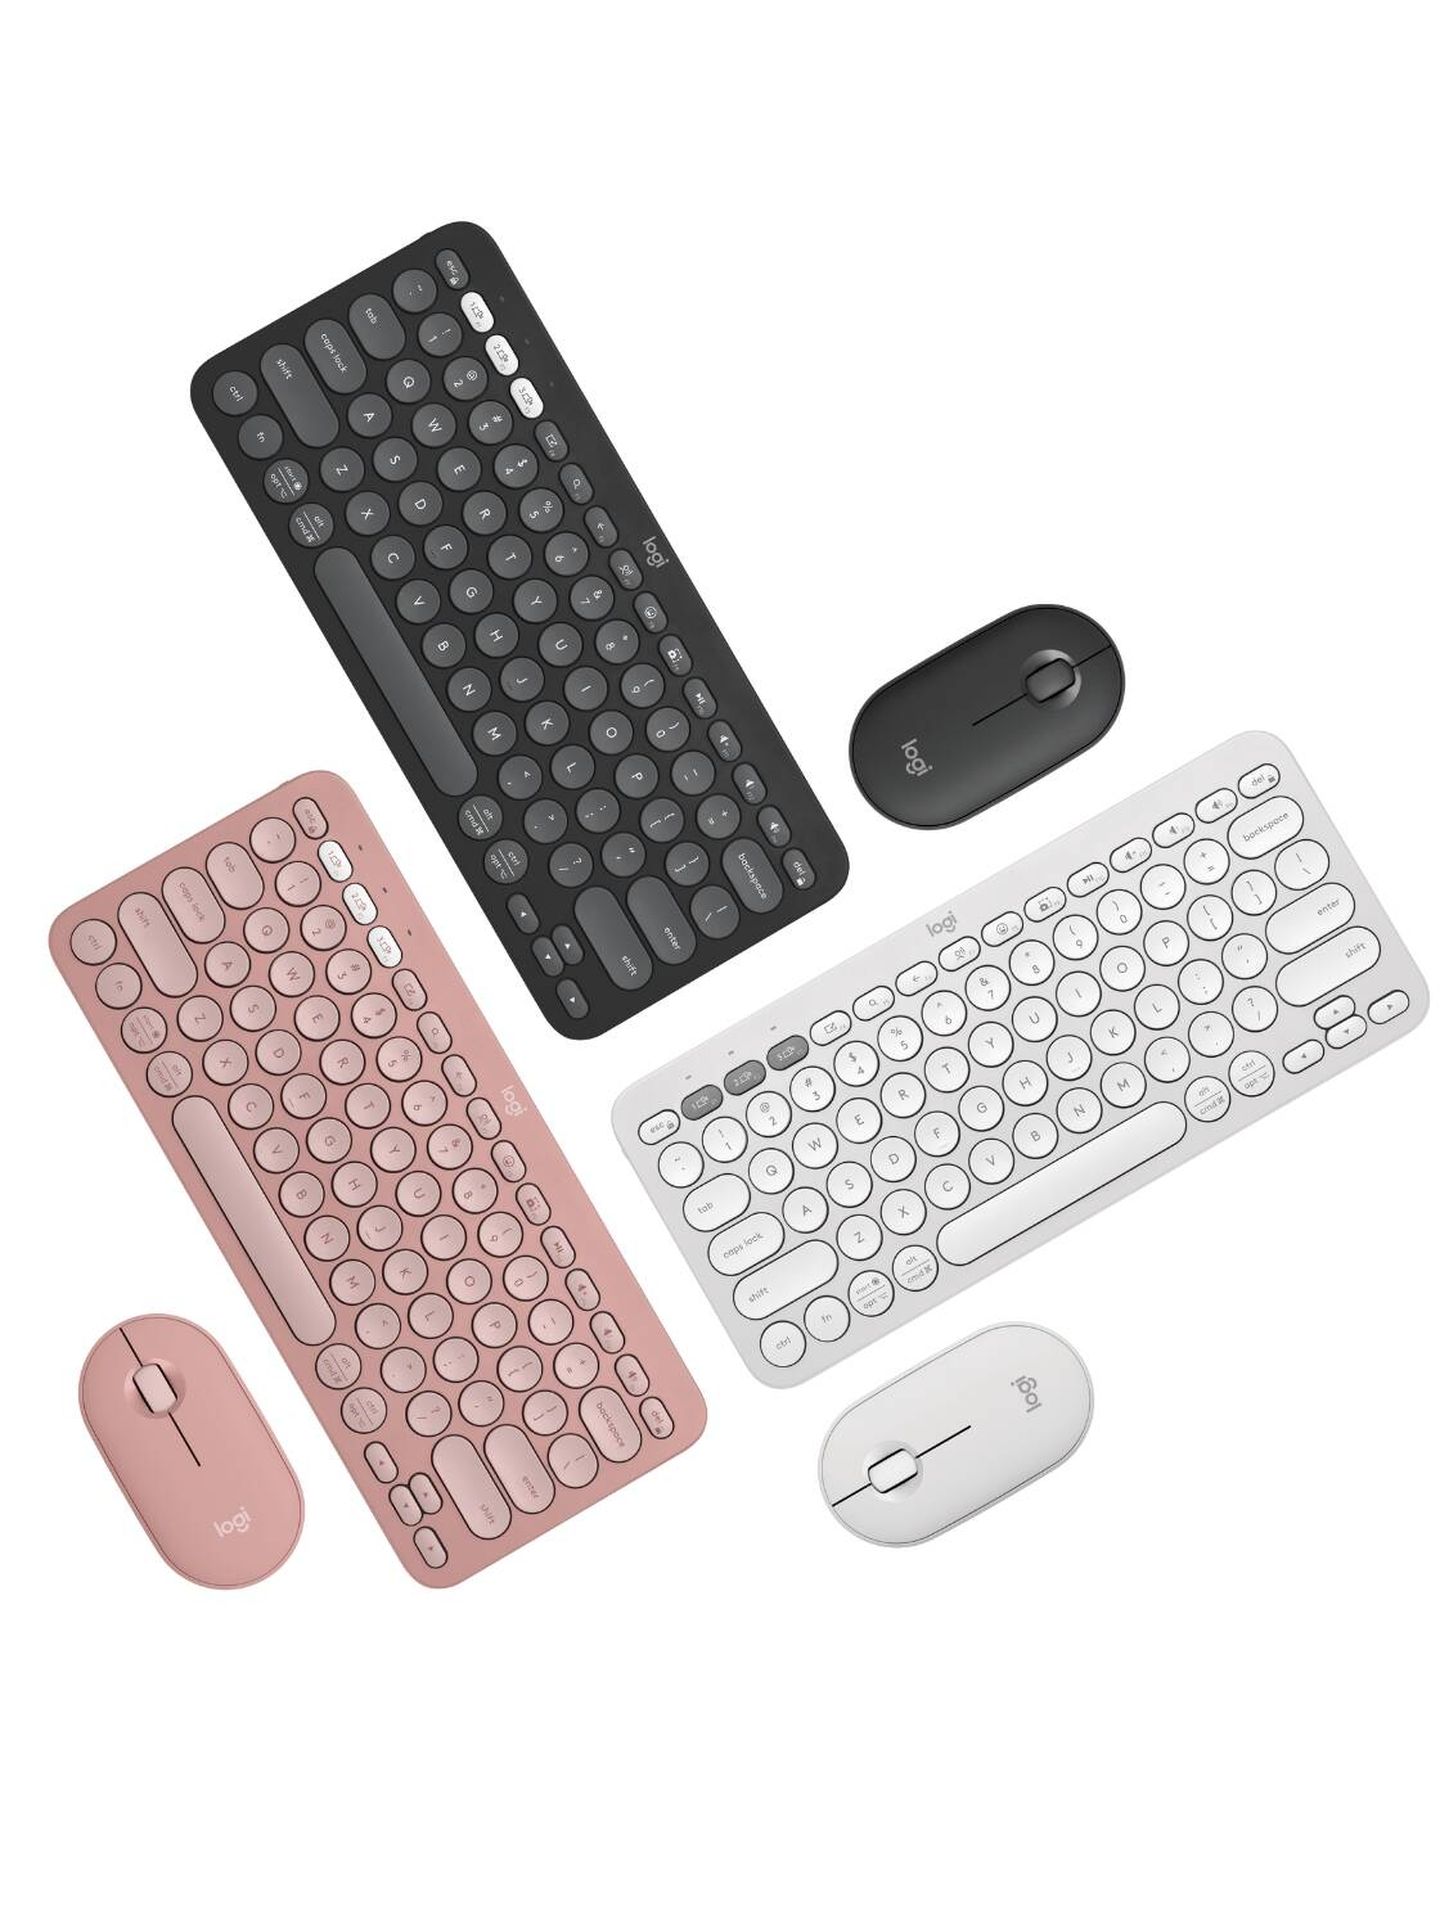 El ratón Pebble 2 y el teclado K380S en sus tres colores. (Cortesía)